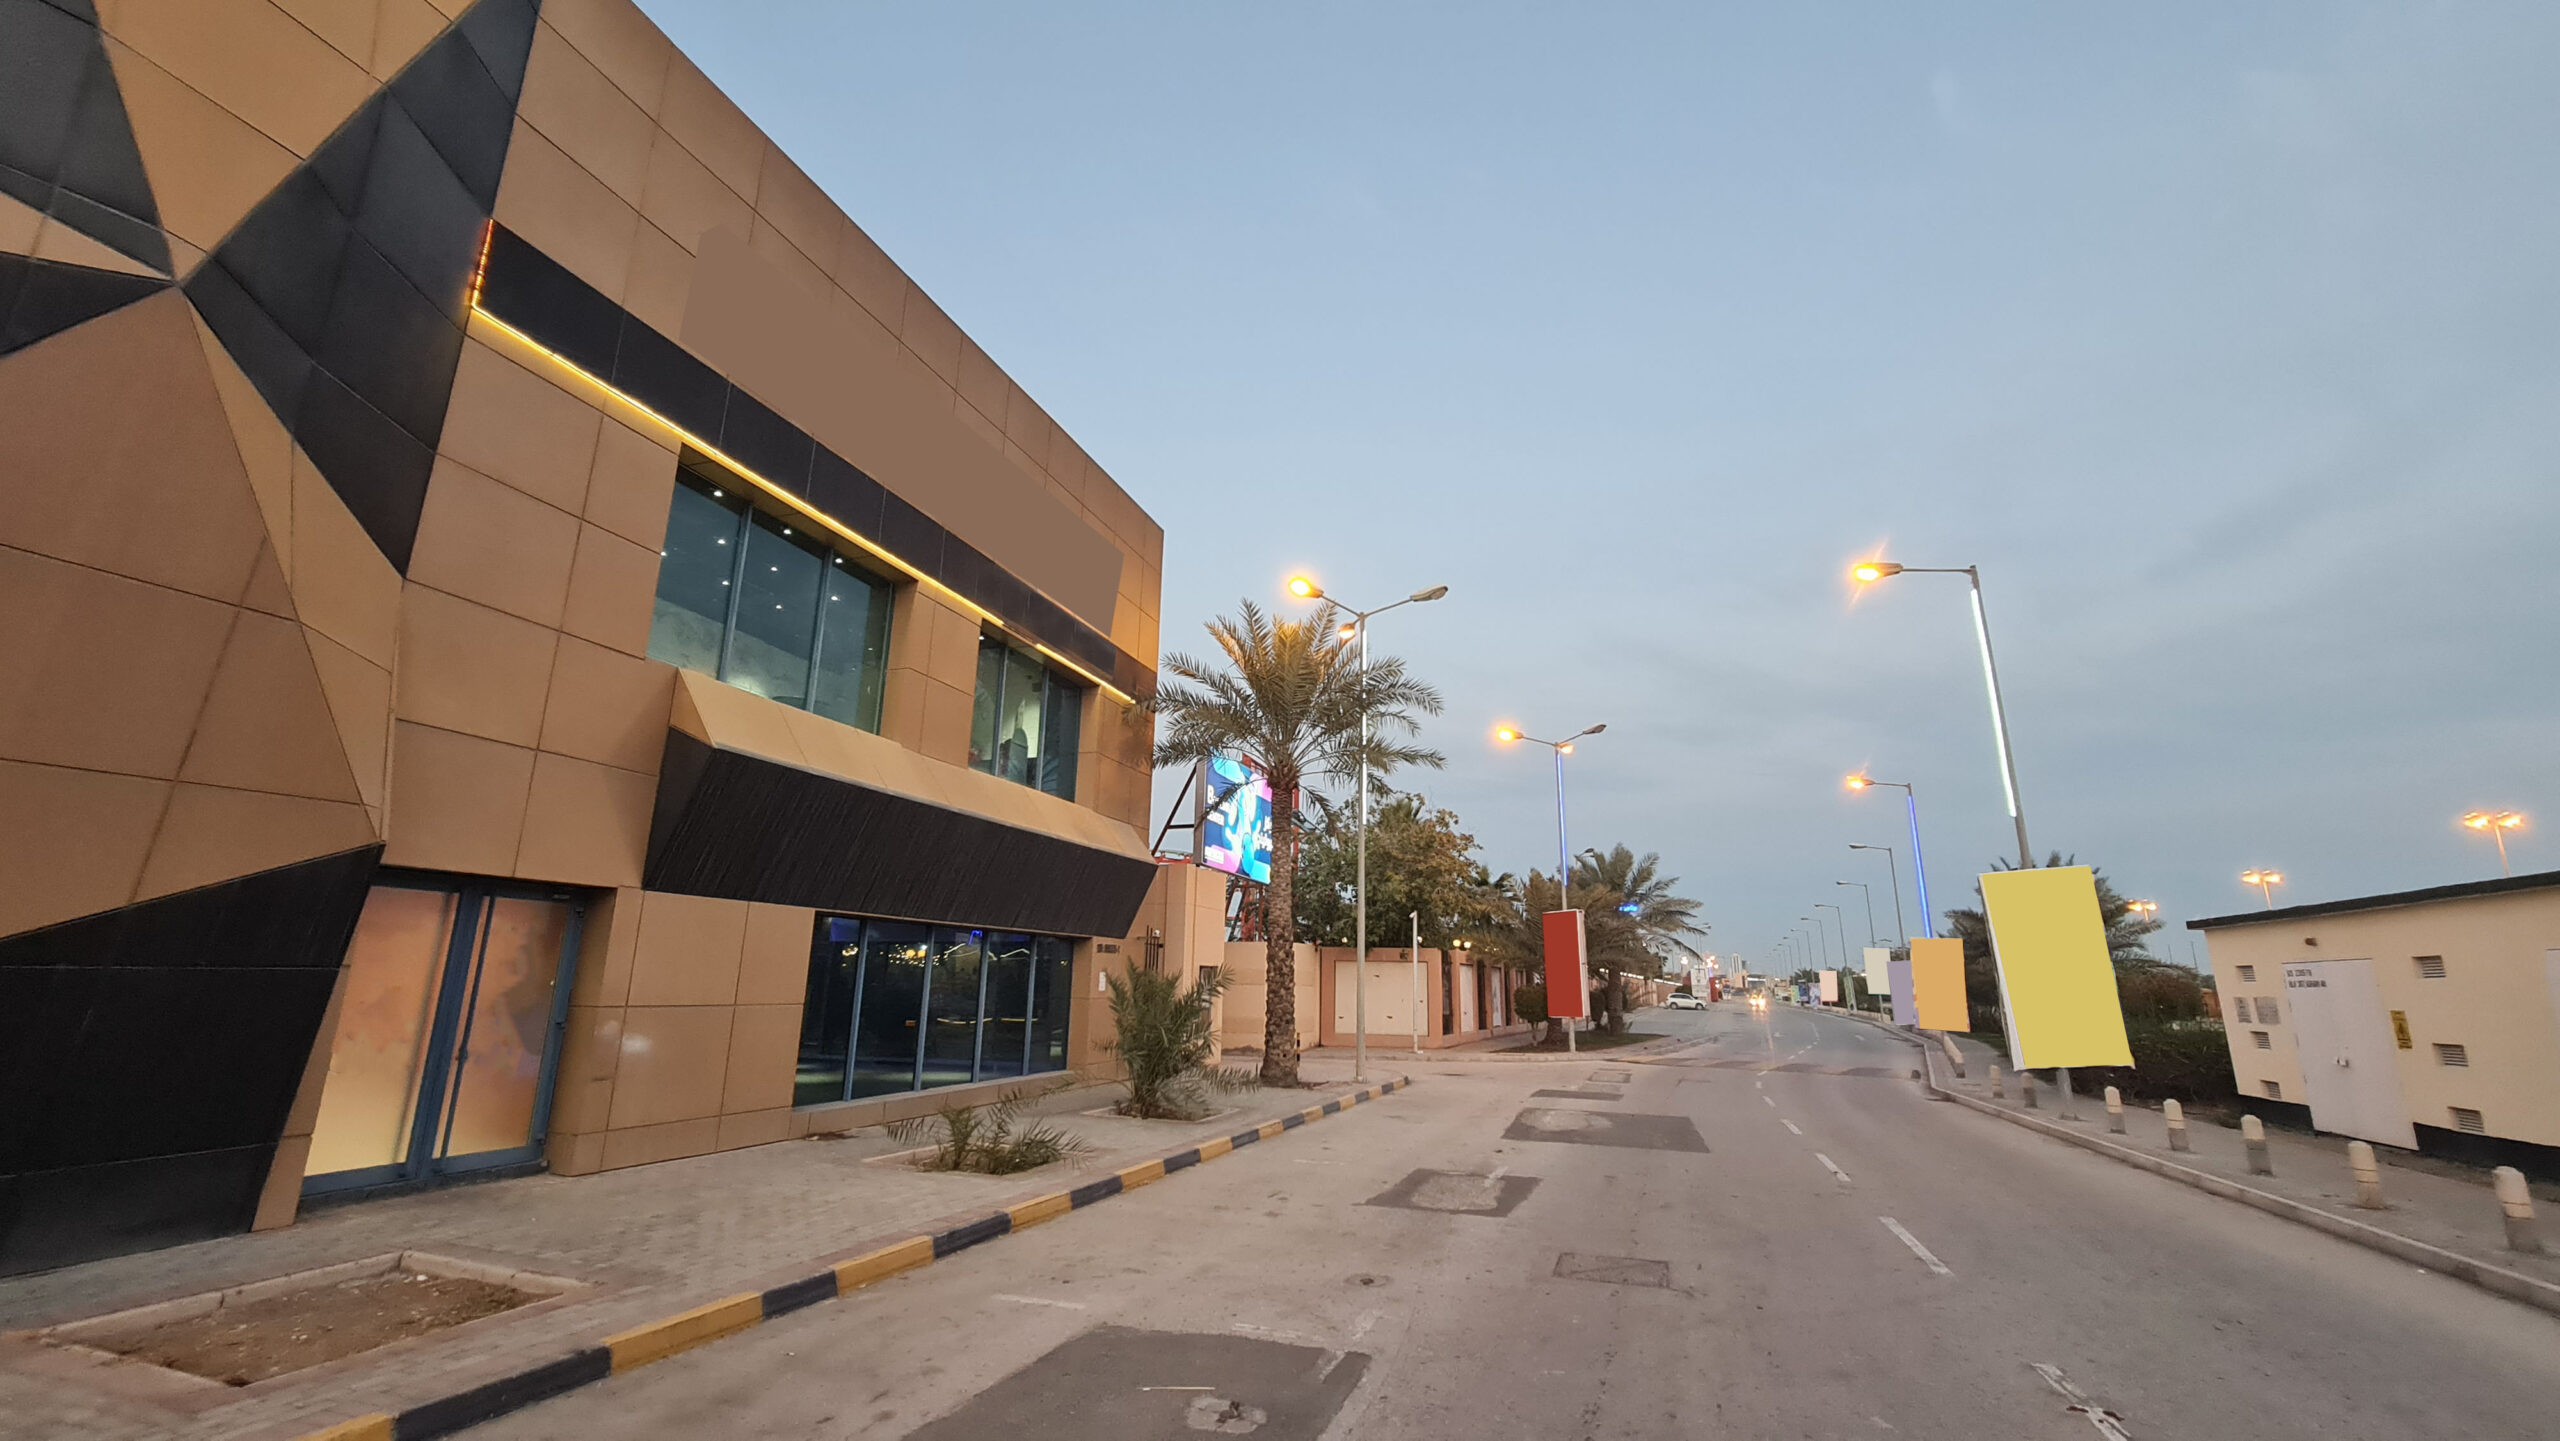 للإيجار معرض ومكتب تجاري بمنطقة عذاري على شارع الشيخ عيسى بن سلمان ال خليفة الرئيسي